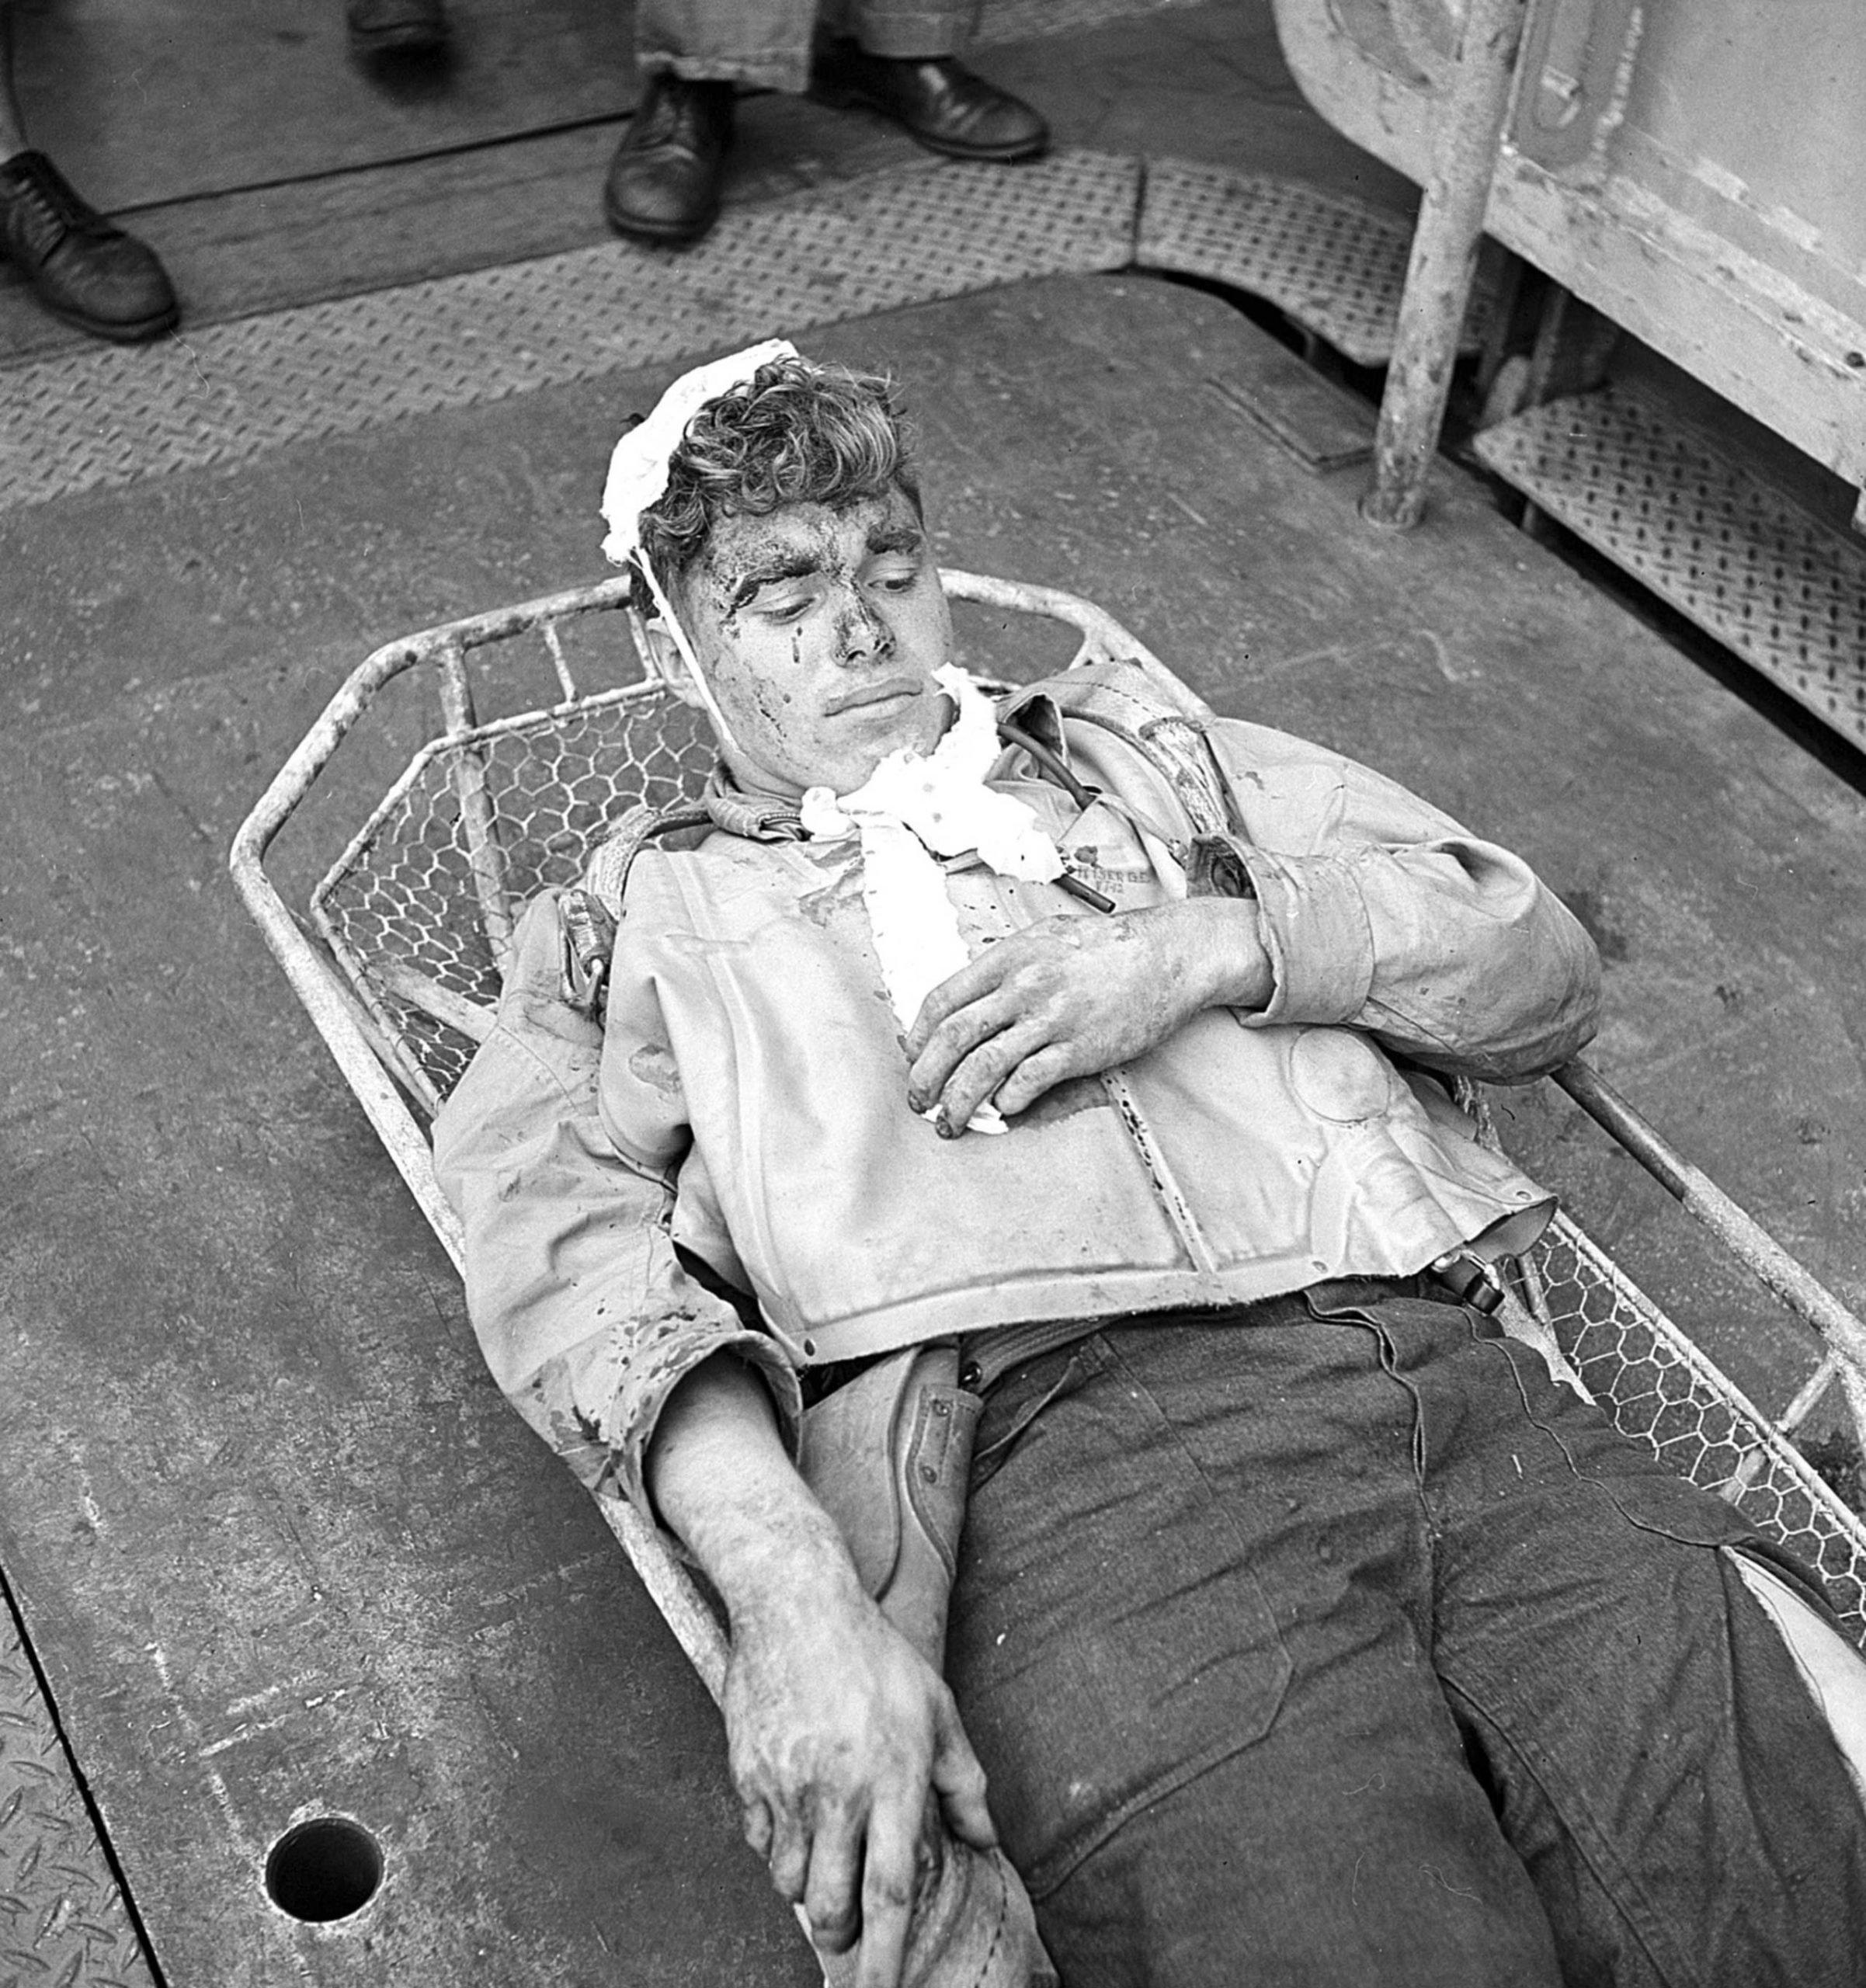 An injured air gunner from a Douglas SBD Dauntless dive bomber